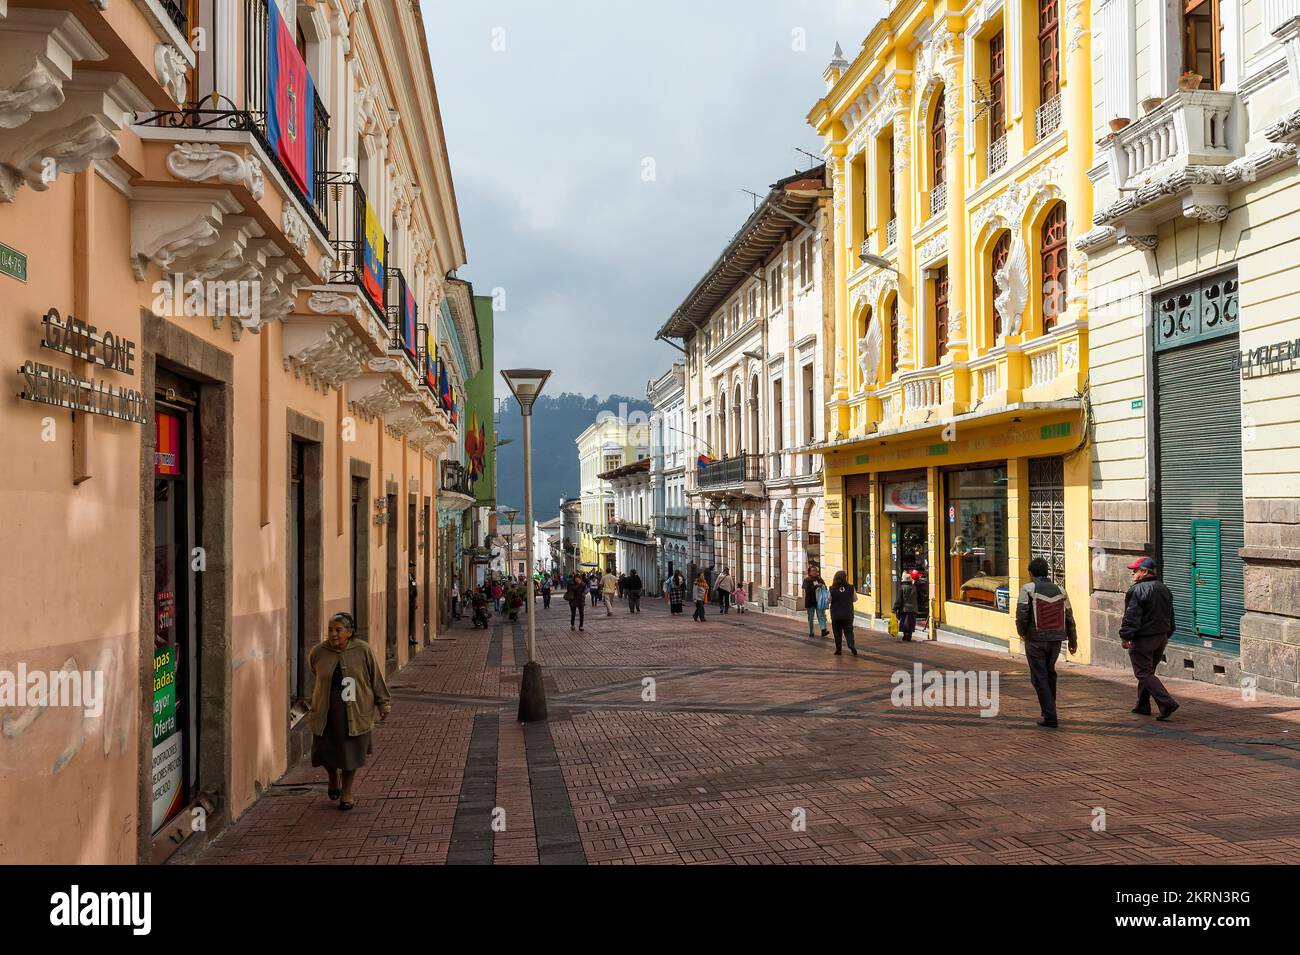 Centre historique de Quito, rue Algodon, province de Pichincha, Équateur Banque D'Images